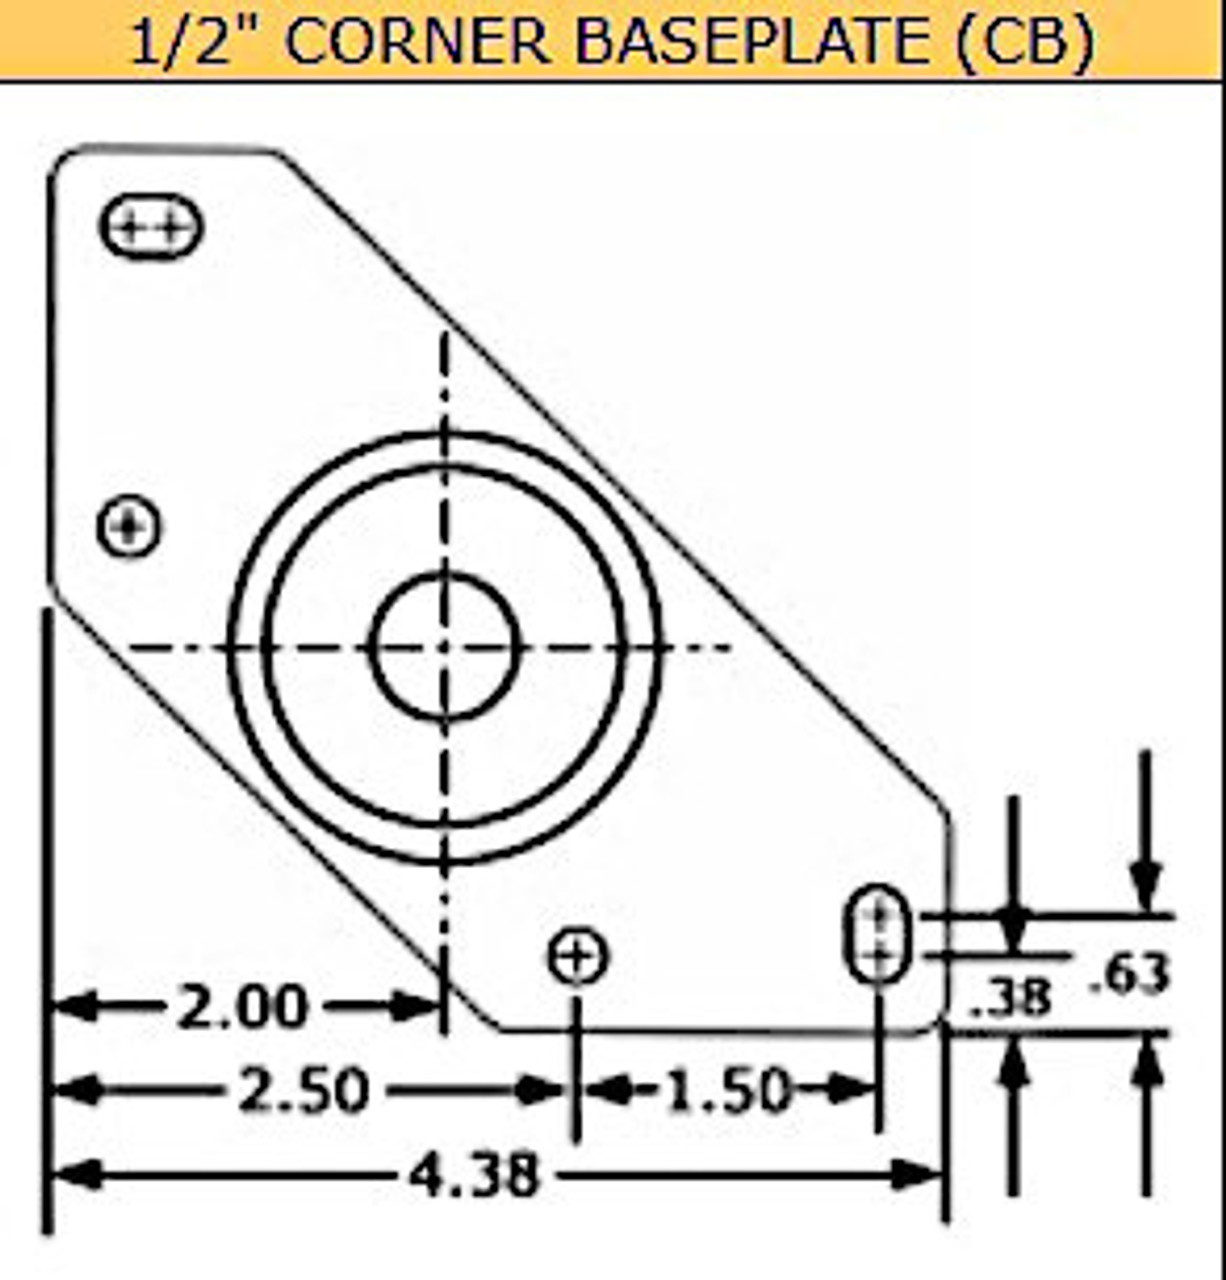 LM5013-CB-SS Corner leveling mount for 1/2-13 stem, stainless insert